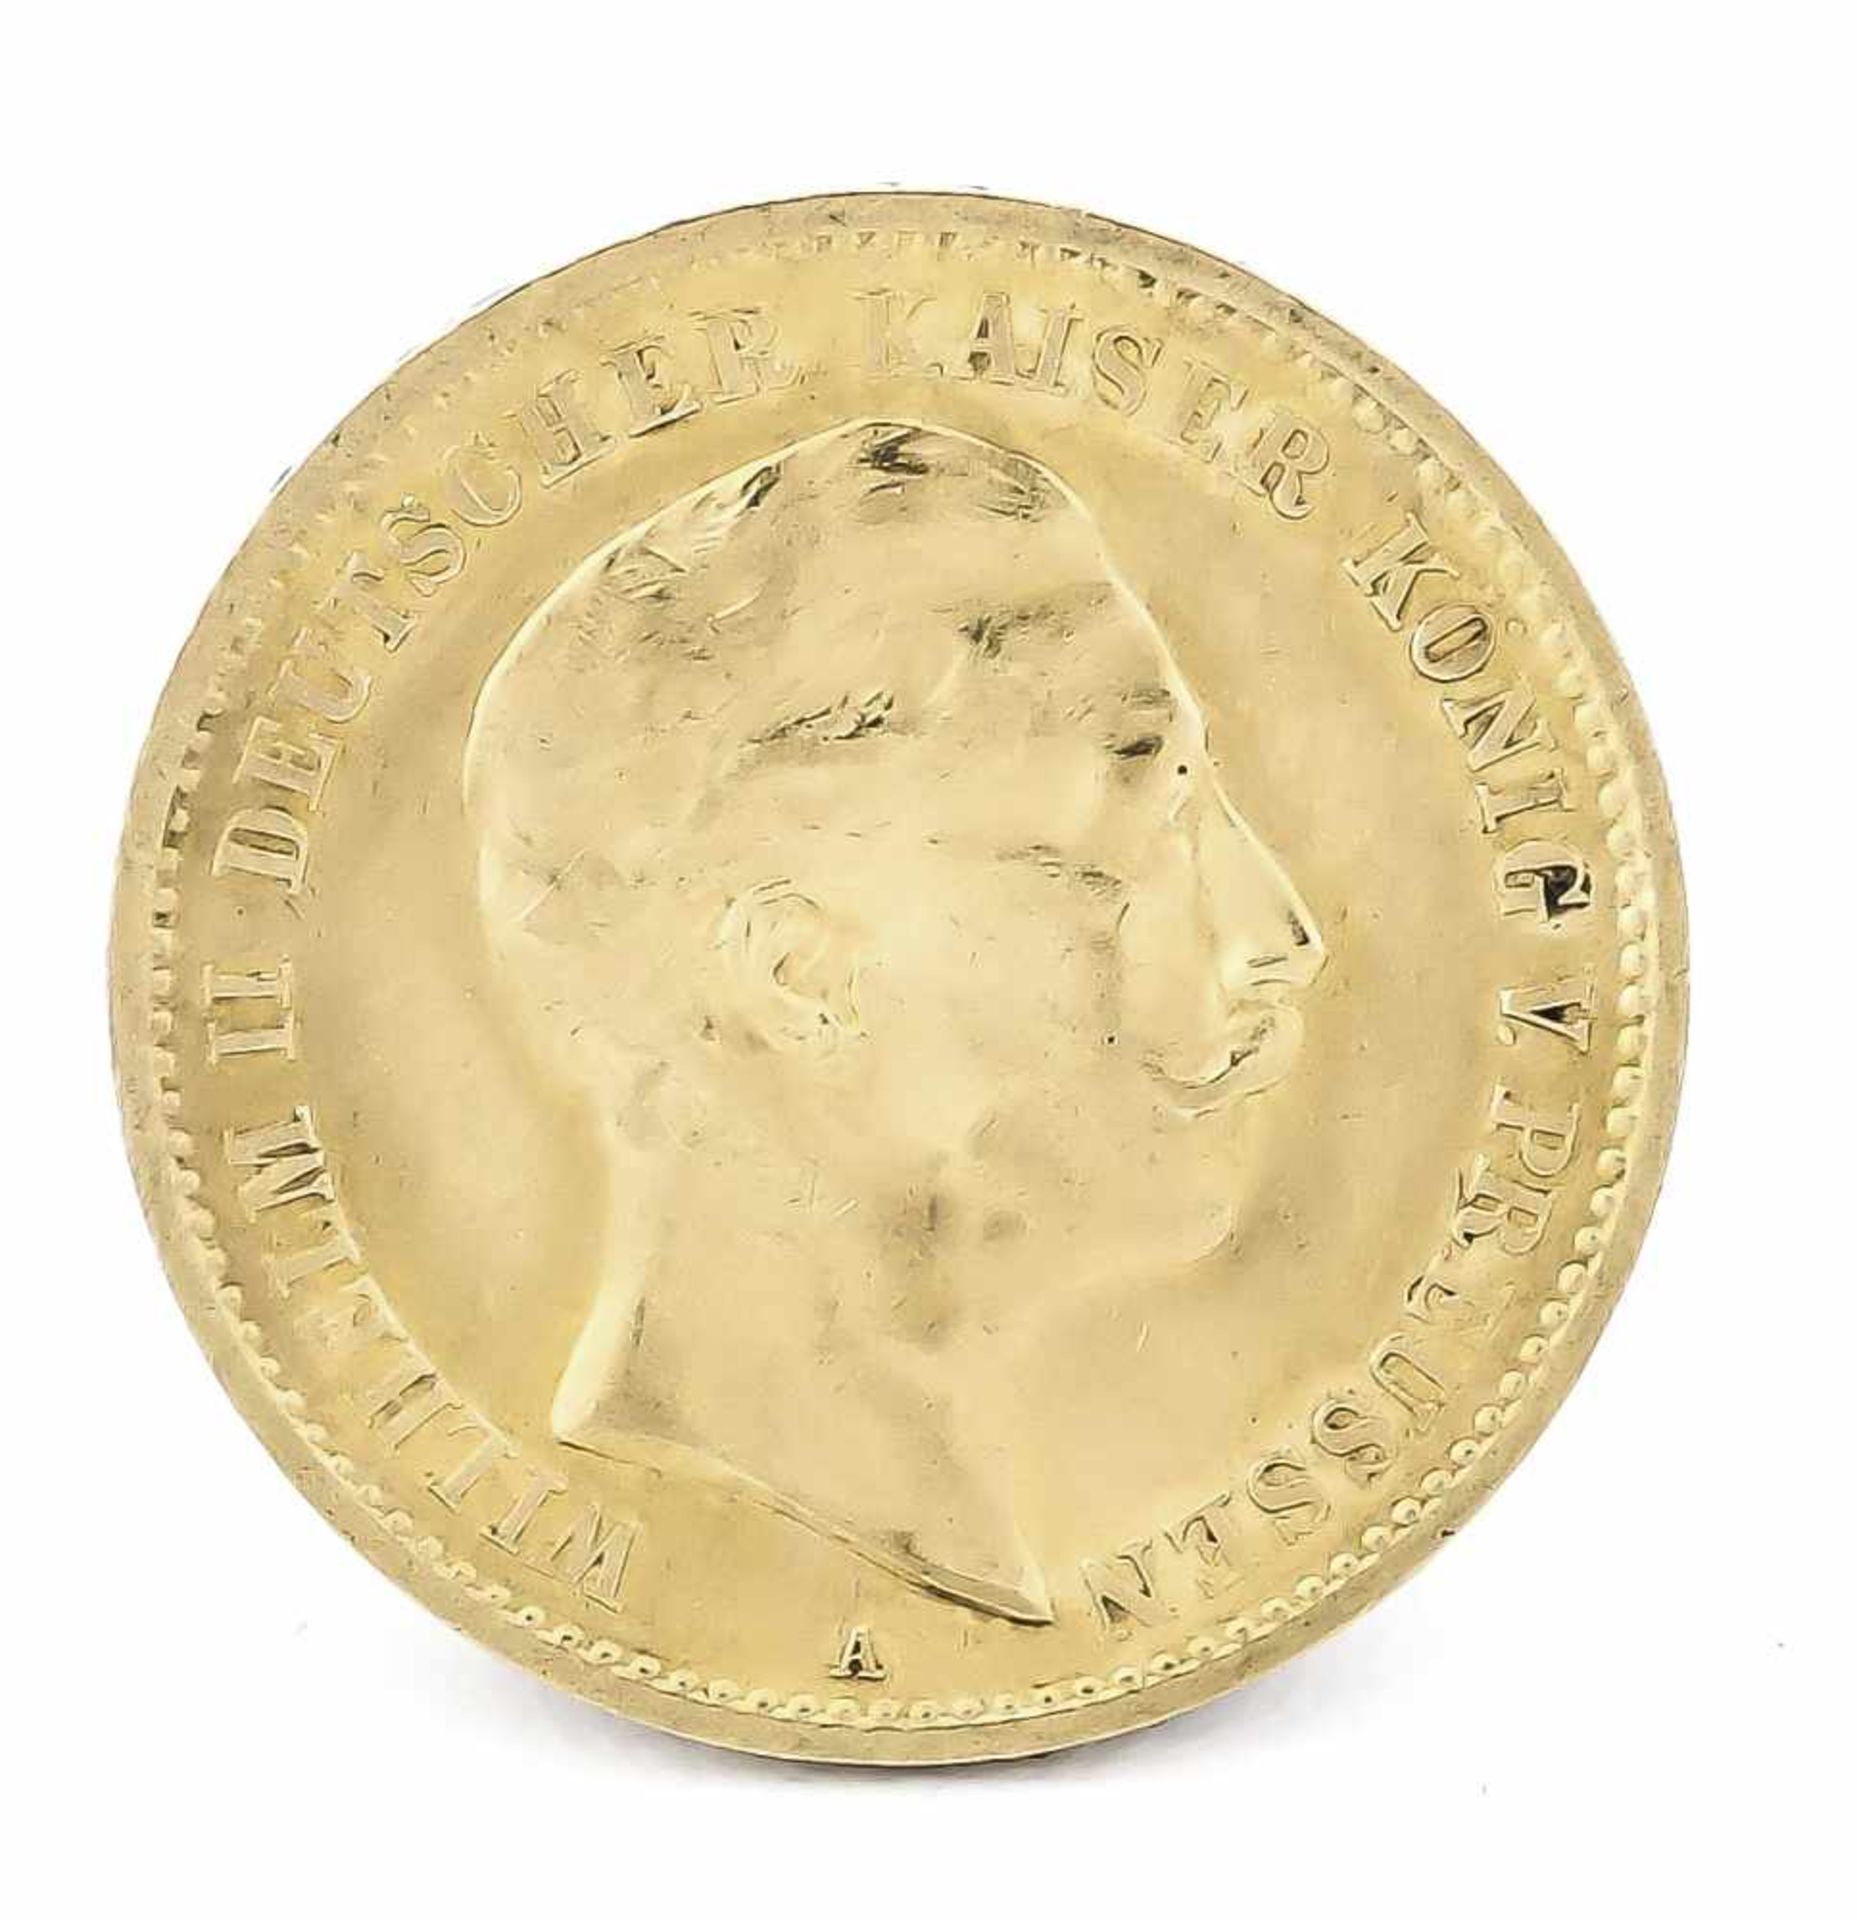 10 Mark, Preußen, Wilhelm II. Deutscher Kaiser König von Preußen, 1910 A, in vz